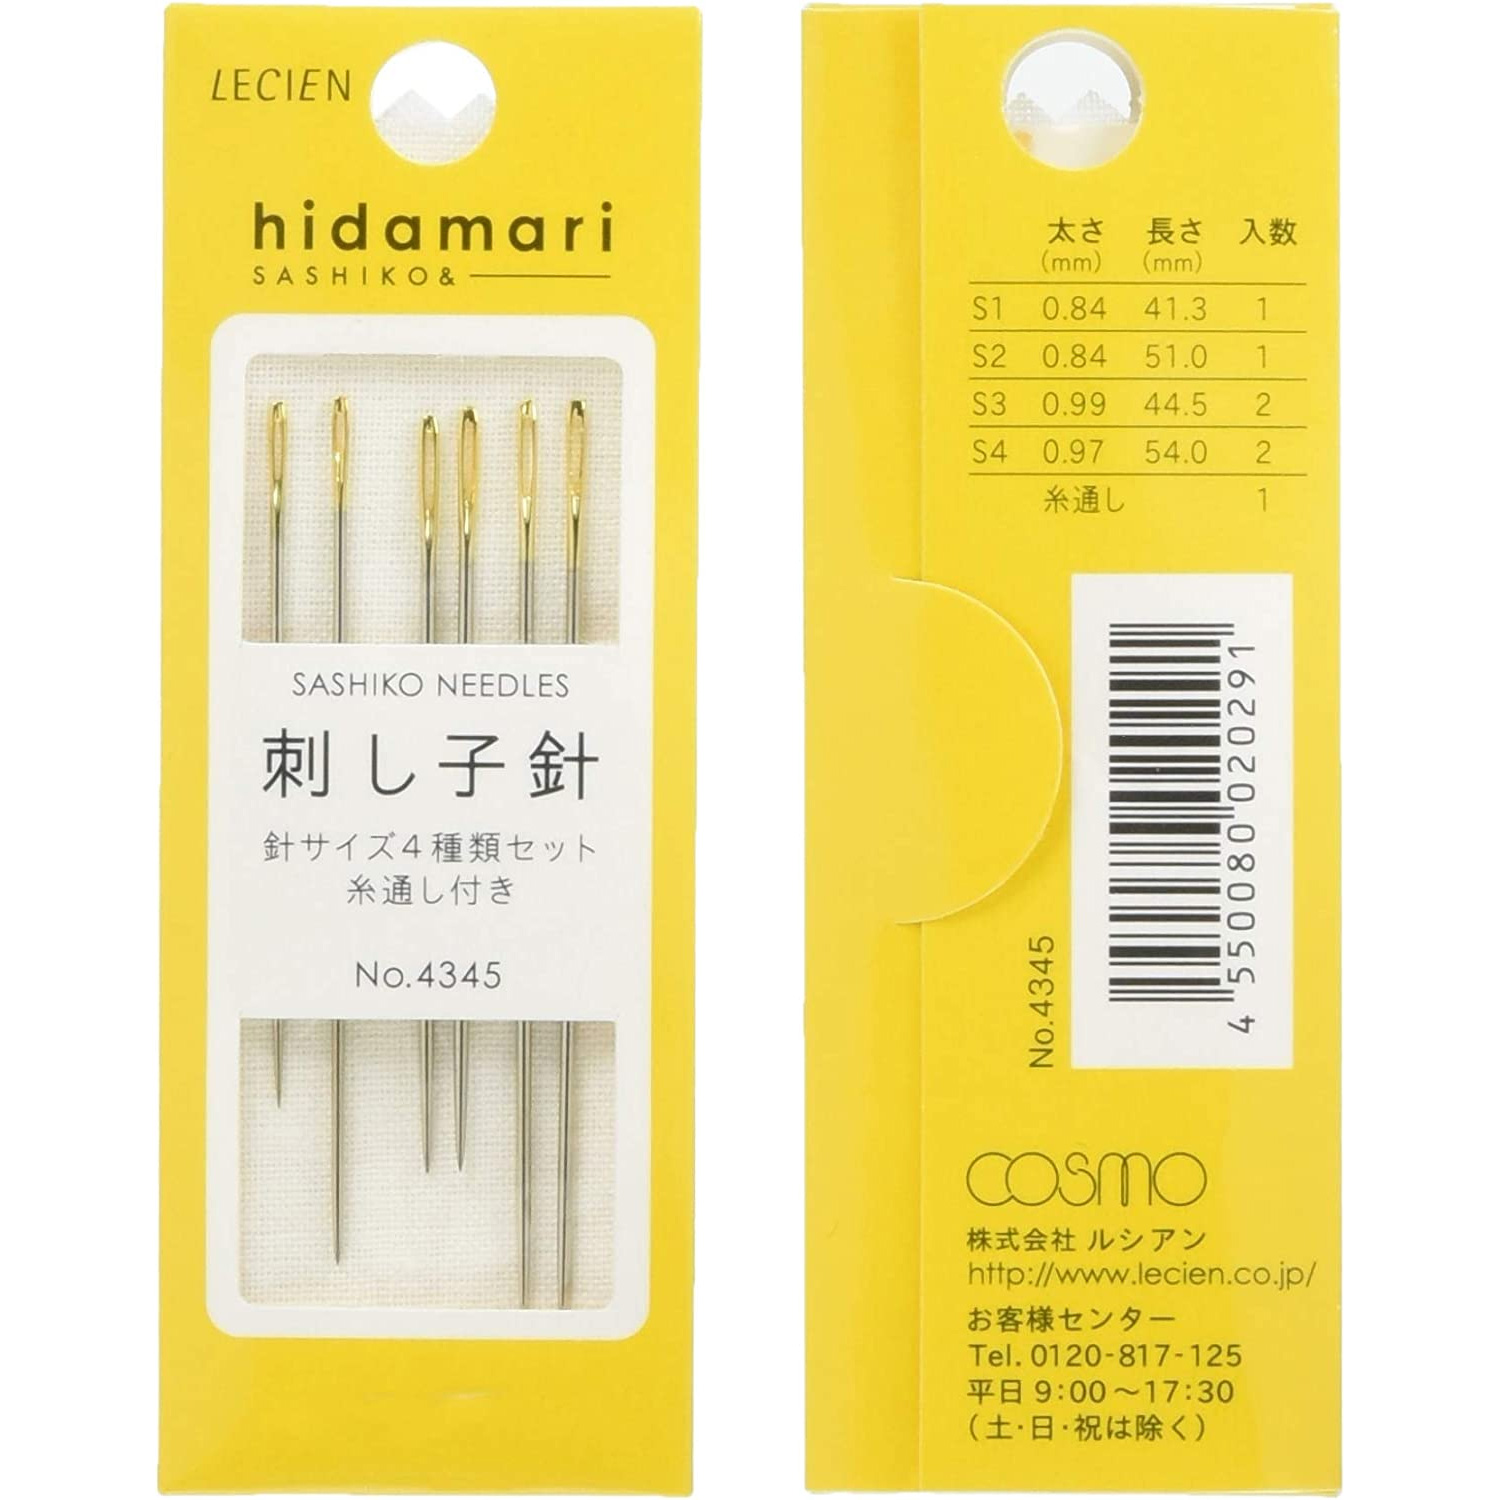 COT4345 Sashiko Needle - hidamari - (pcs)